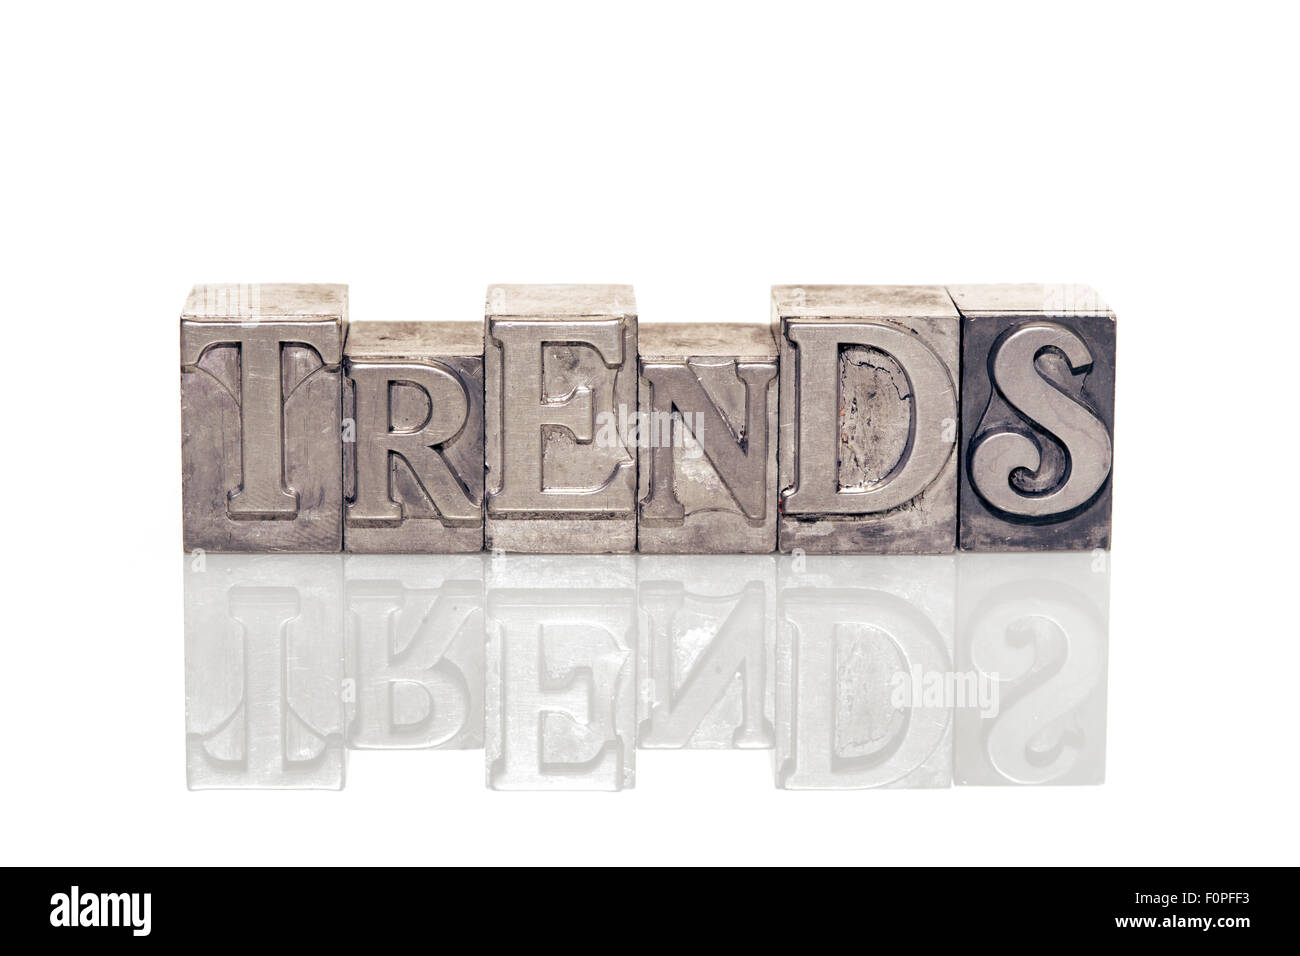 Trends-Wort aus metallischen Buchdruck auf reflektierende Oberfläche hergestellt Stockfoto